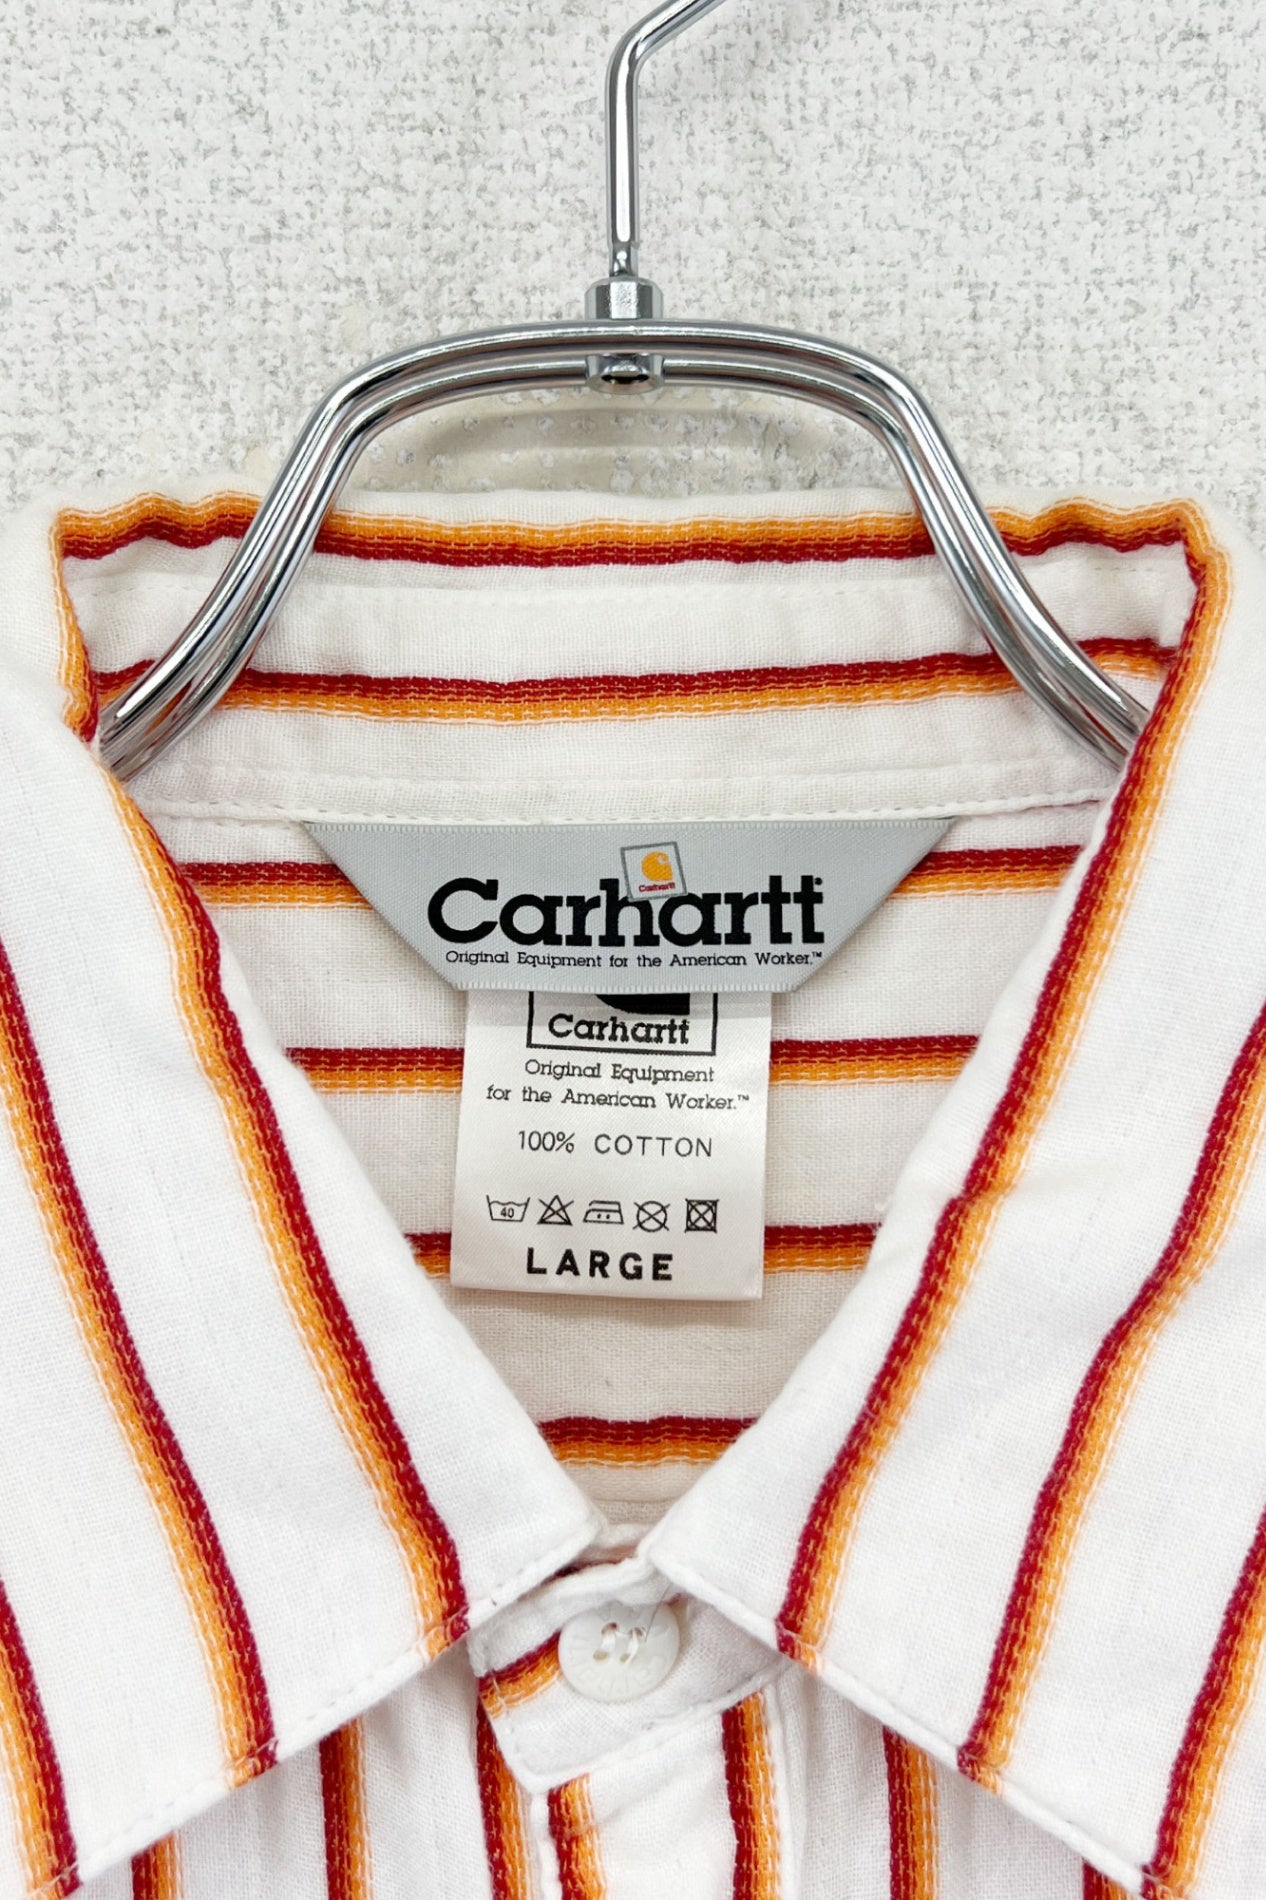 Carhartt striped shirt